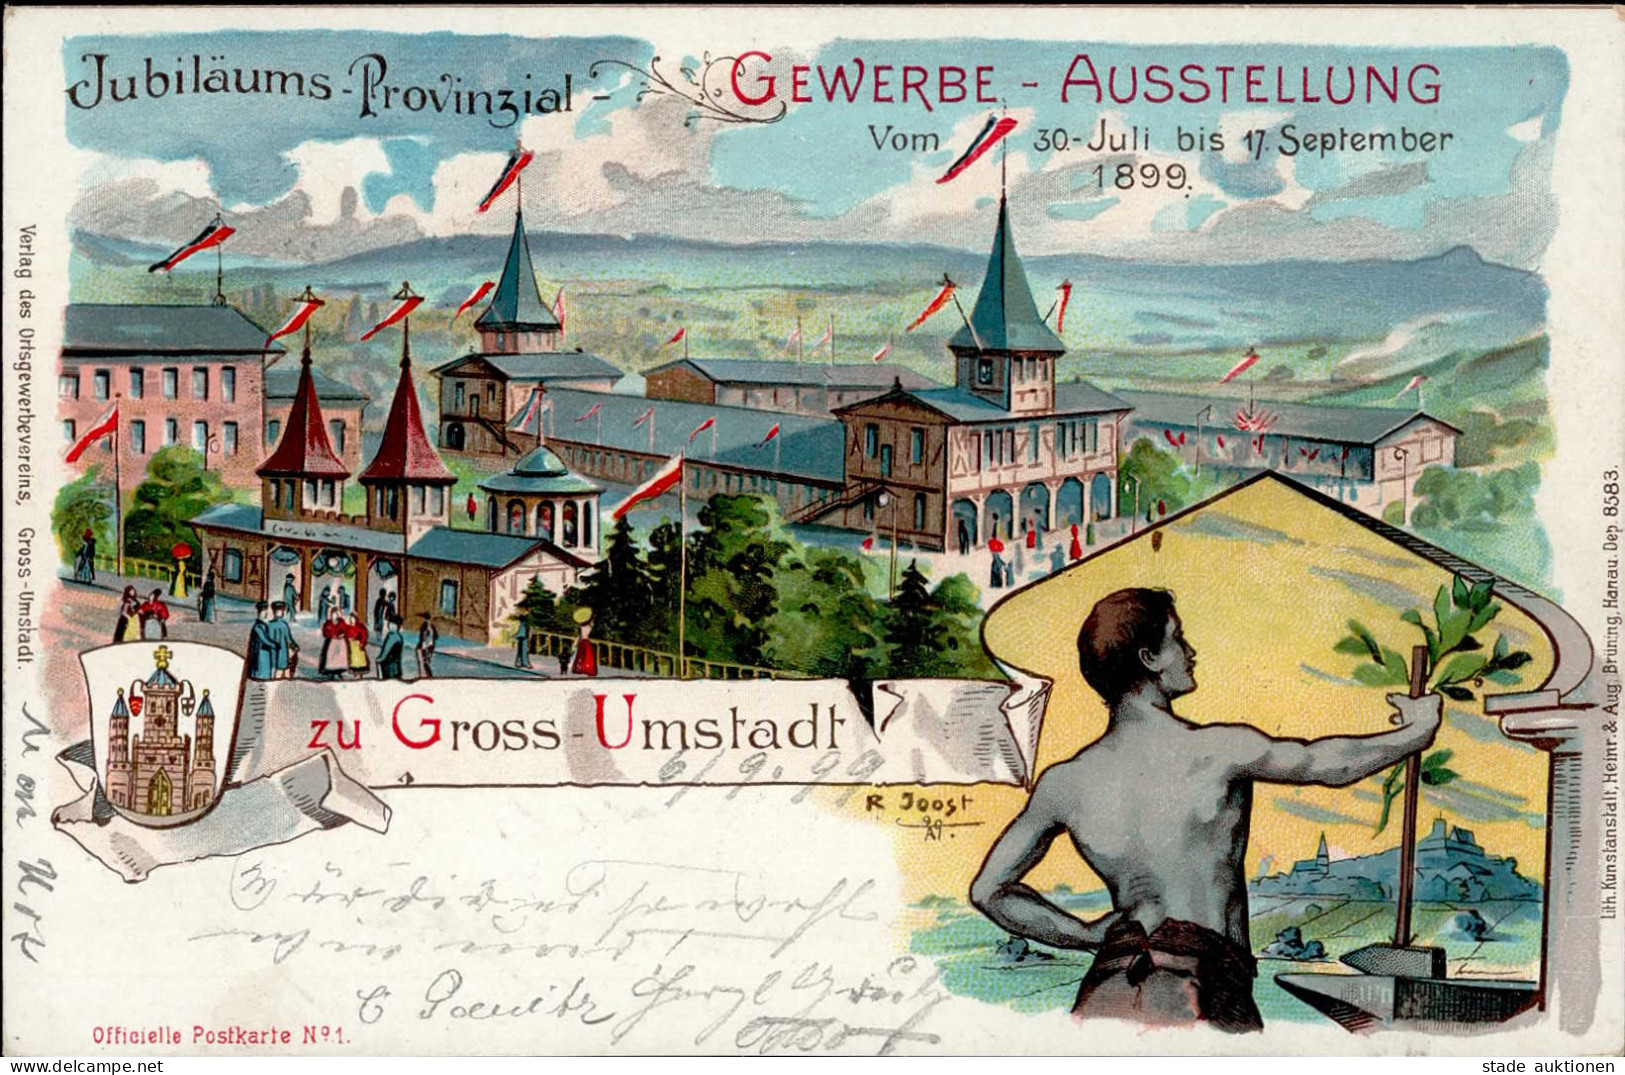 GROSS-UMSTADT - Jubiläums-Provinzial-GEWERBE-AUSSTELLUNG 1899 Künstlerlitho Sign. R.Joost I - Tentoonstellingen